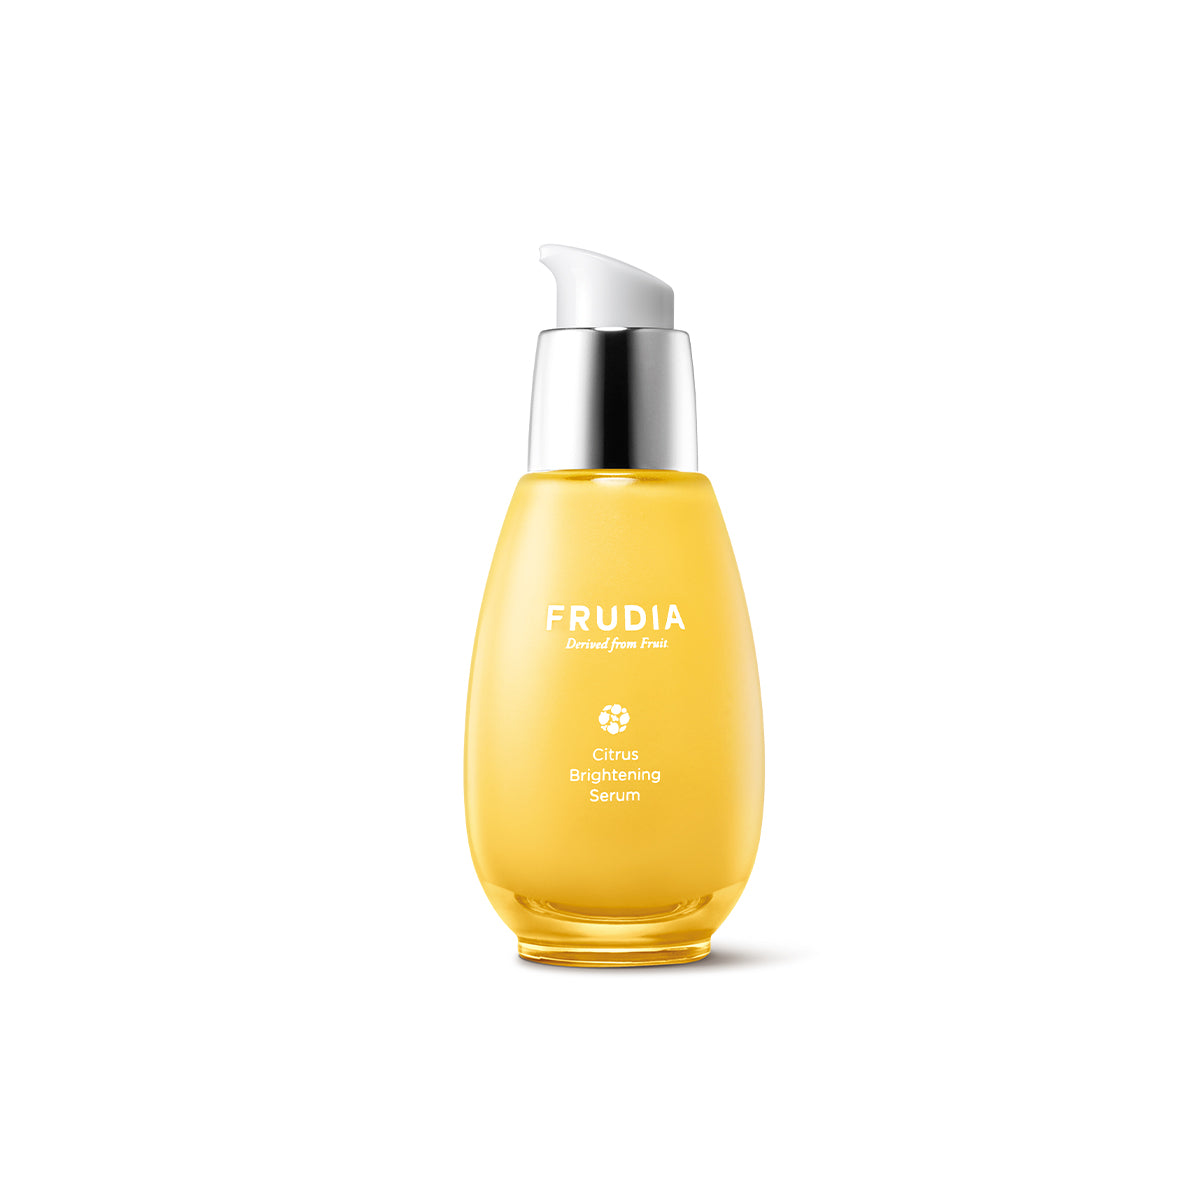 FRUDIA - Citrus Brightening Serum